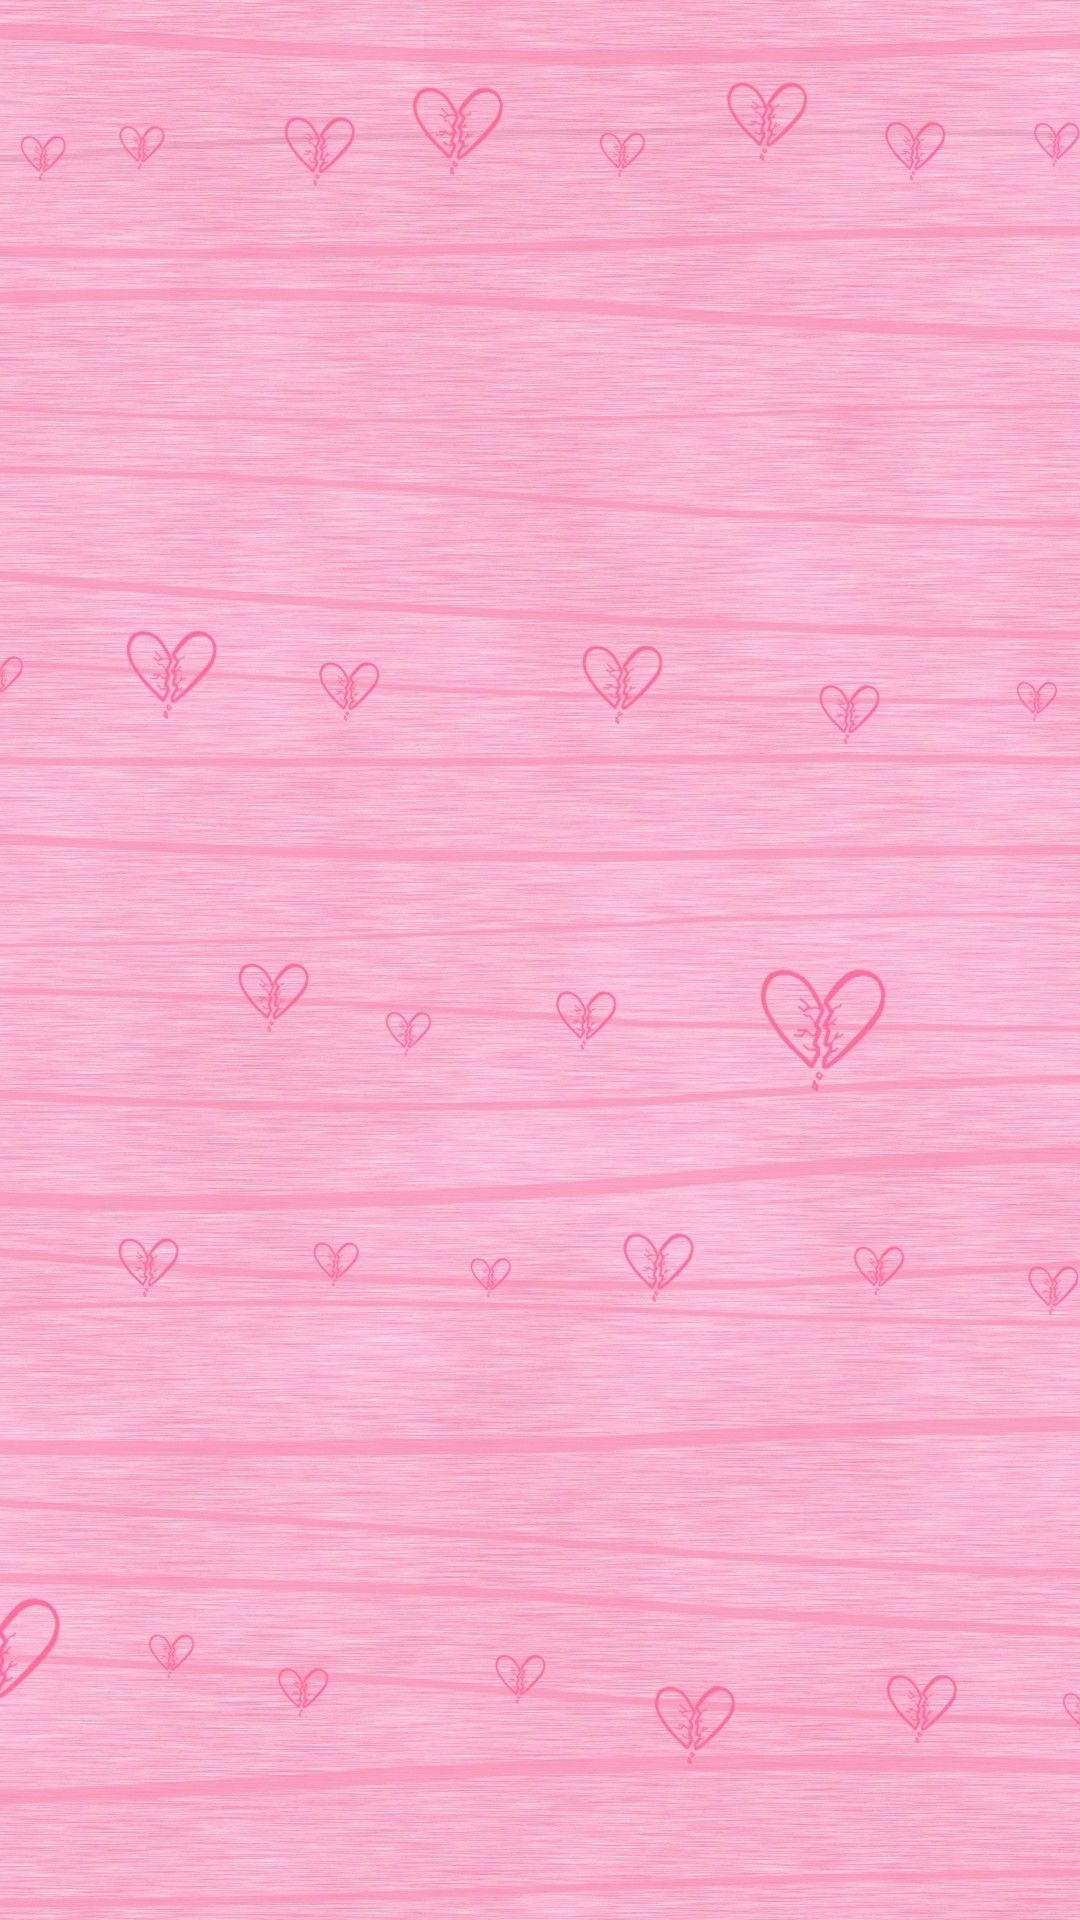 Pink wallpaper iphone .com